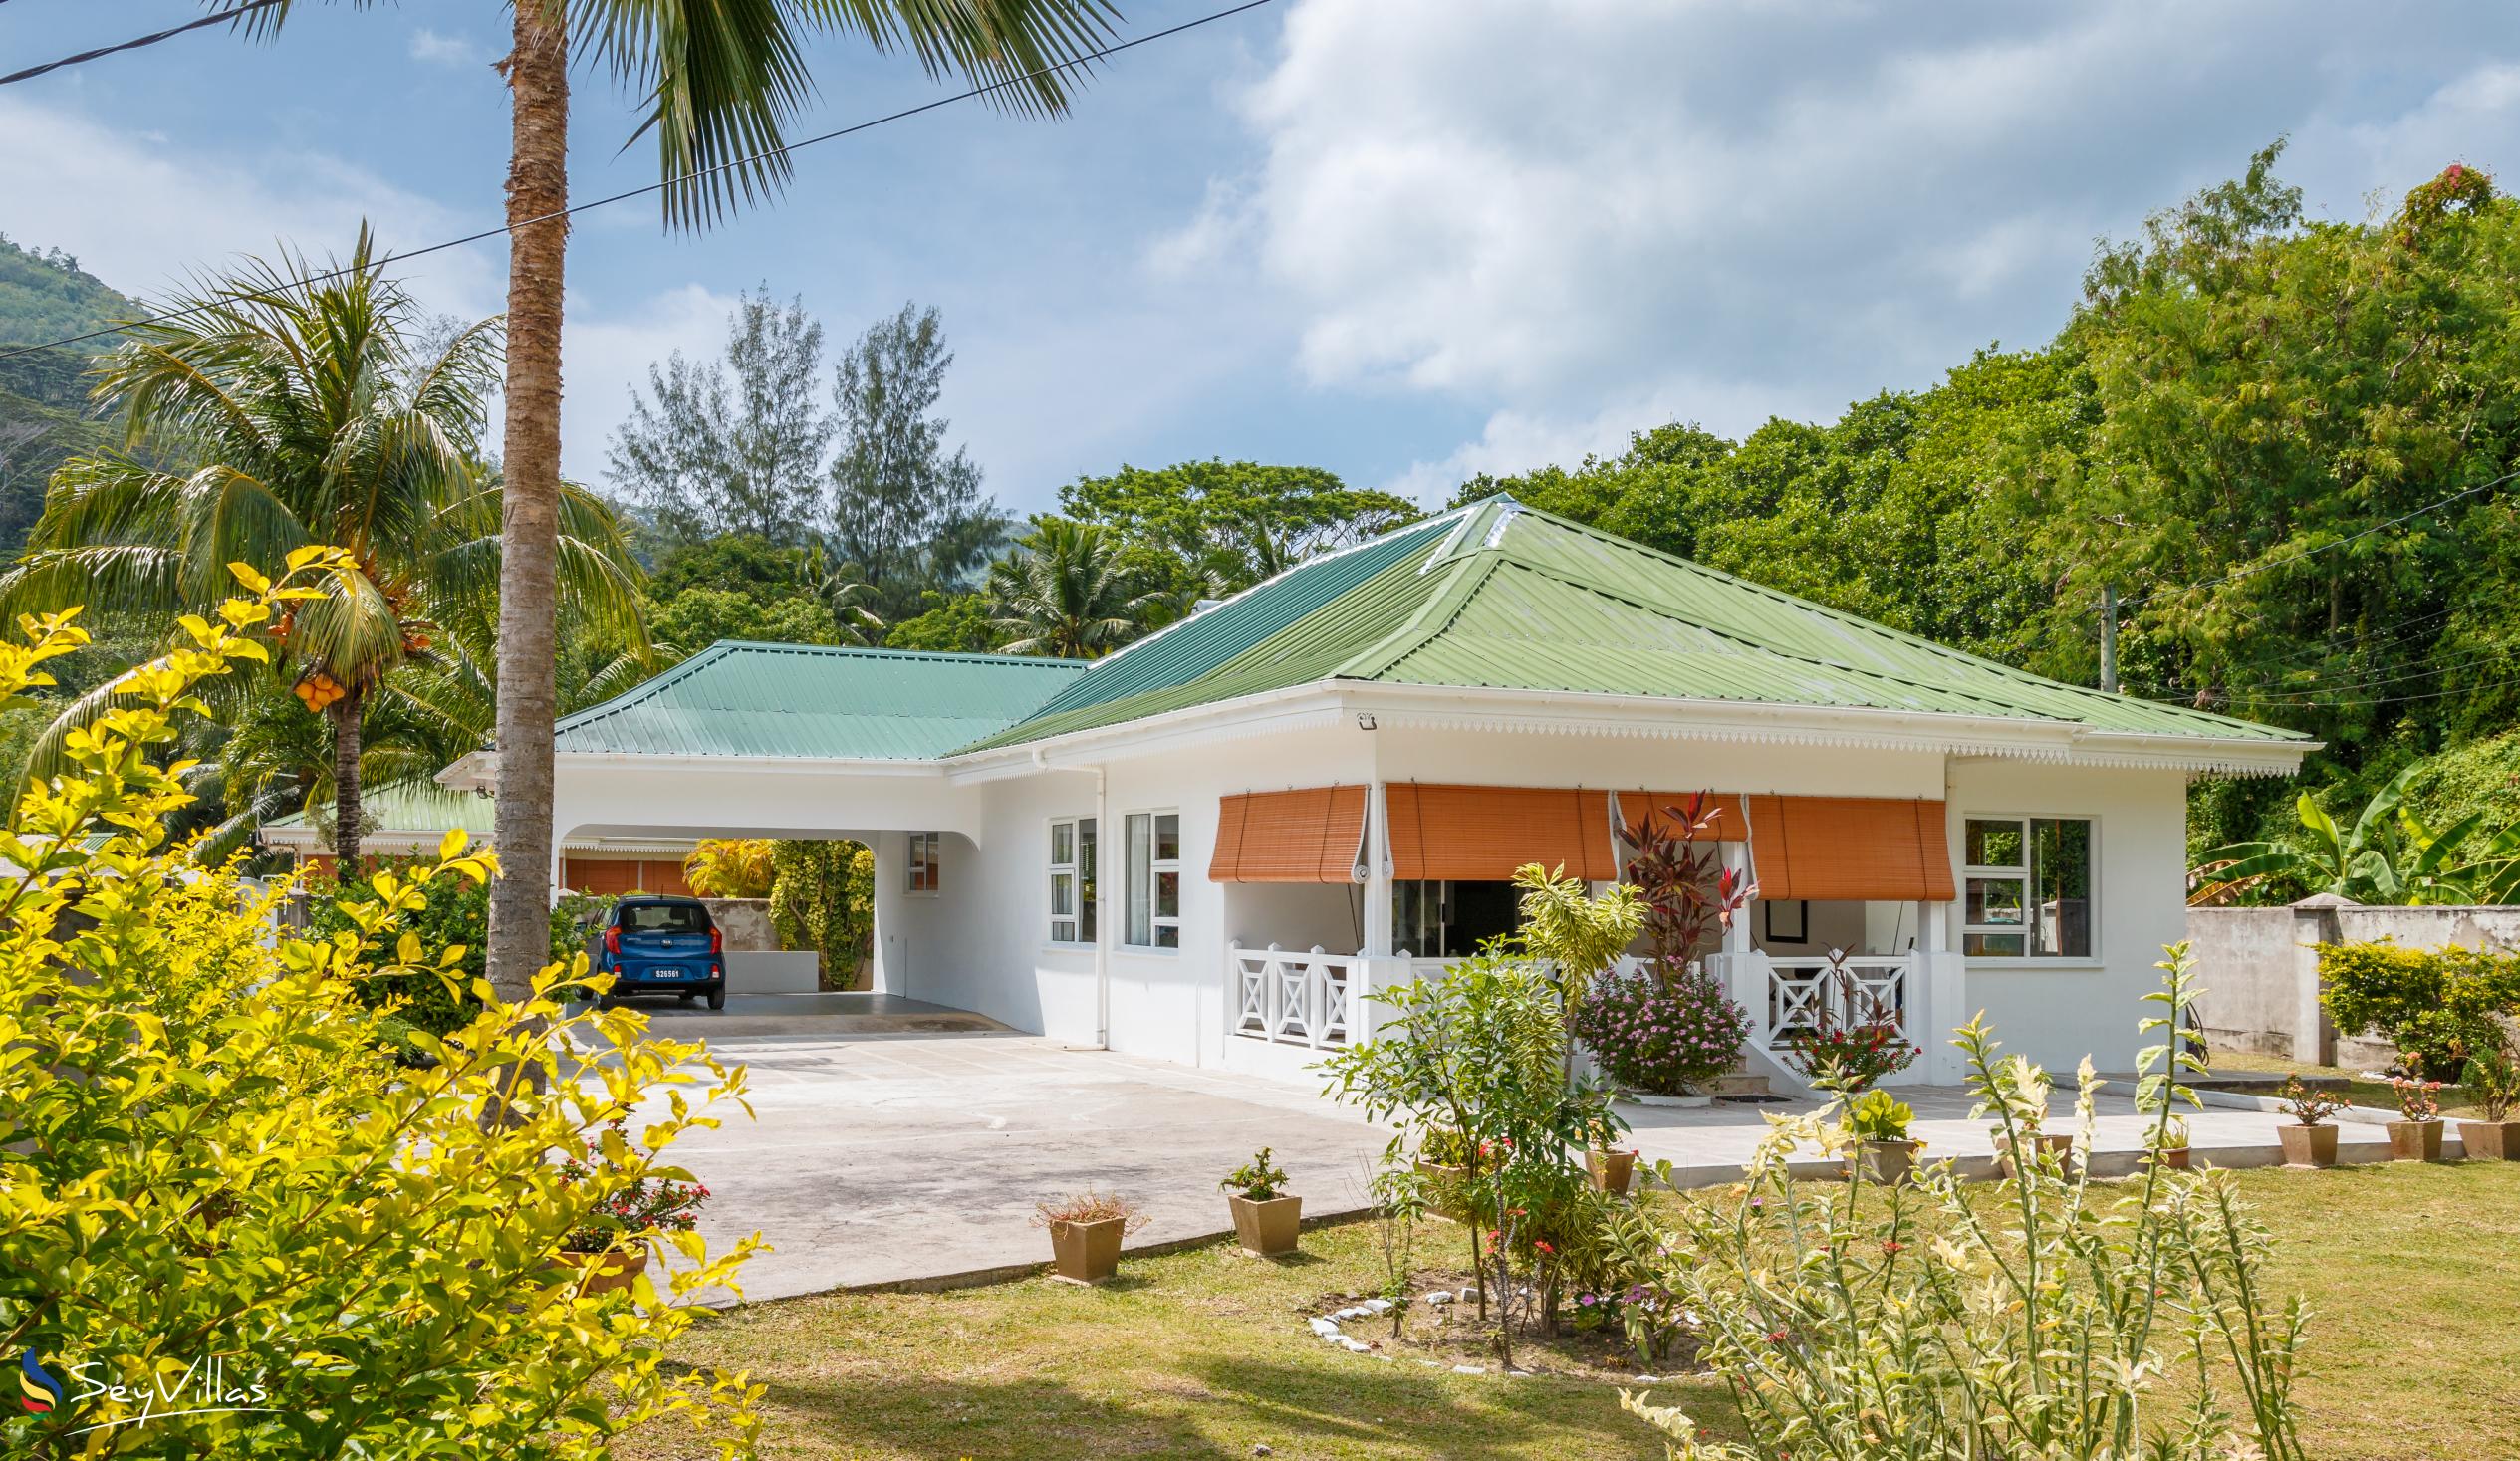 Foto 1: Coco Blanche (Maison Coco) - Esterno - Mahé (Seychelles)